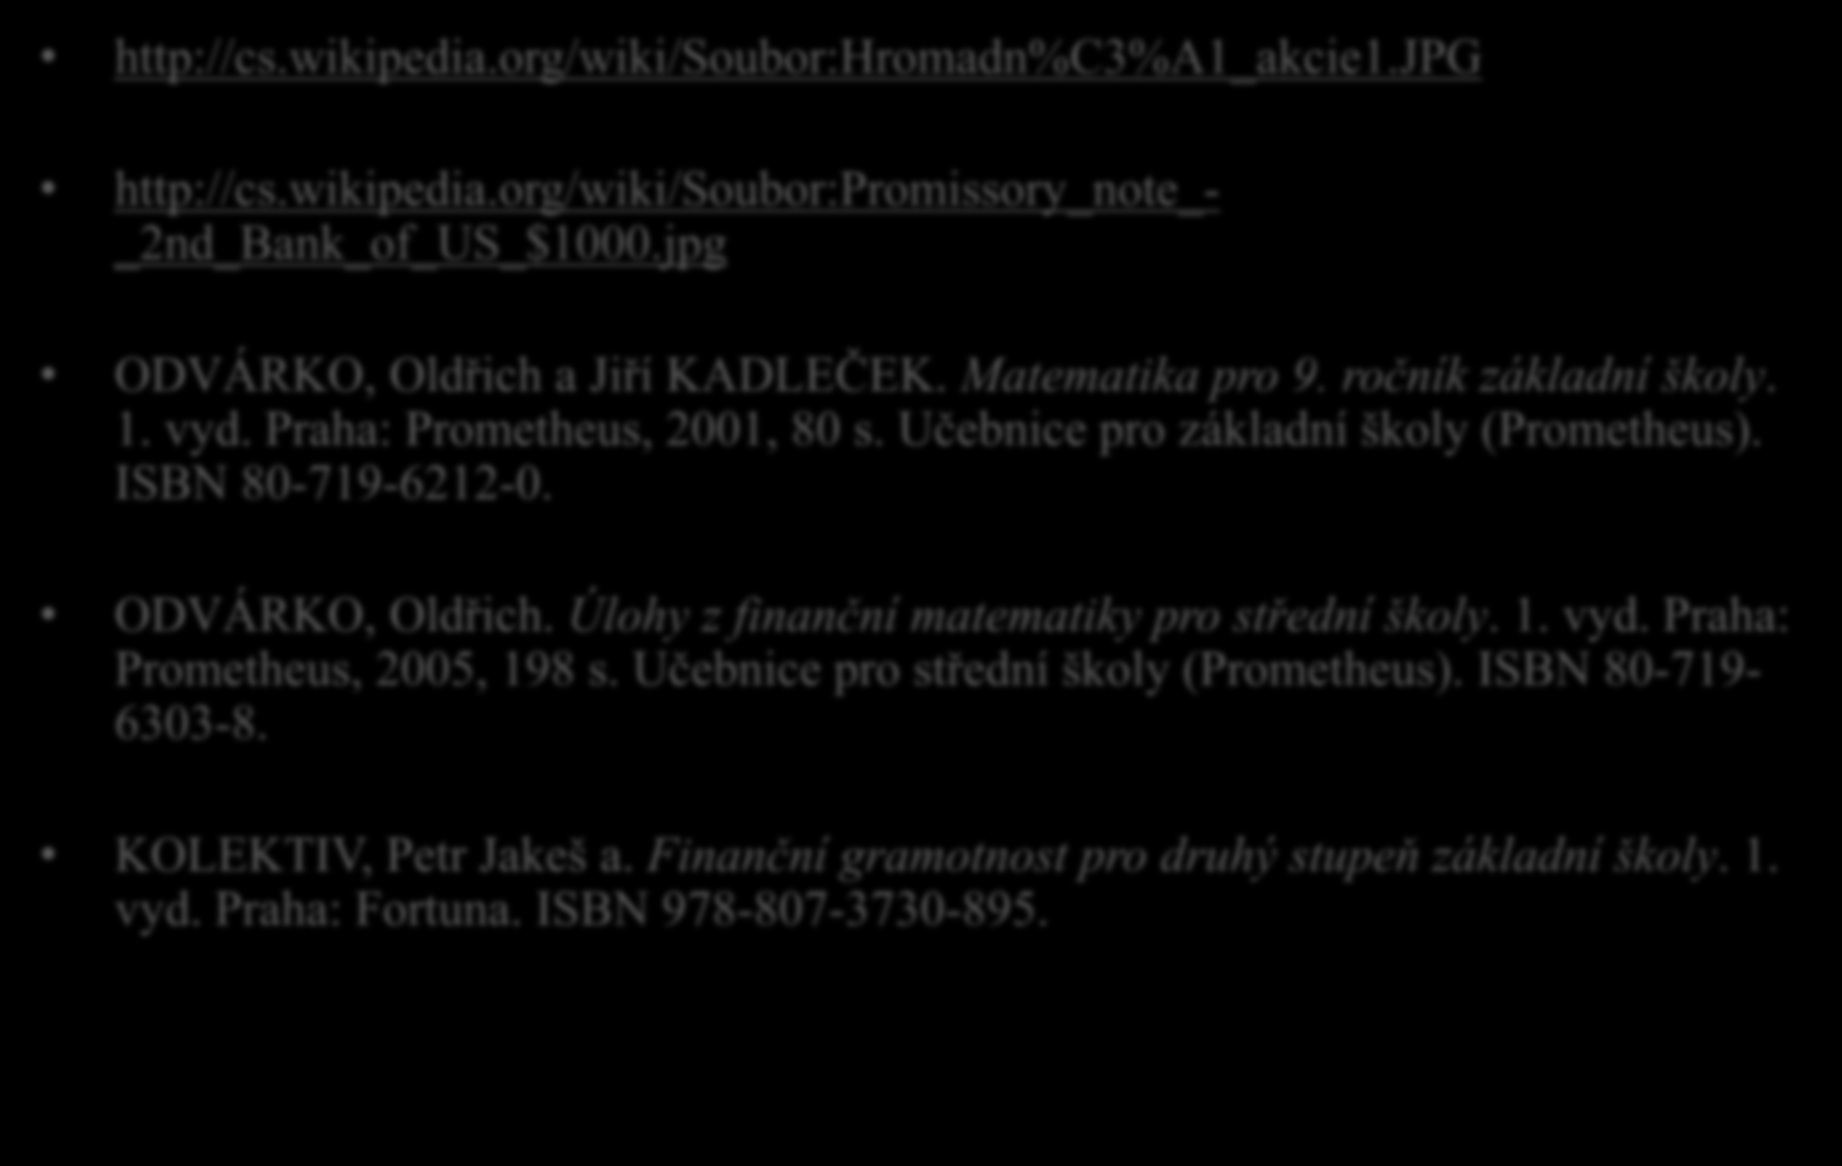 Zdroje http://cs.wikipedia.org/wiki/soubor:hromadn%c3%a1_akcie1.jpg http://cs.wikipedia.org/wiki/soubor:promissory_note_- _2nd_Bank_of_US_$1000.jpg ODVÁRKO, Oldřich a Jiří KADLEČEK. Matematika pro 9.